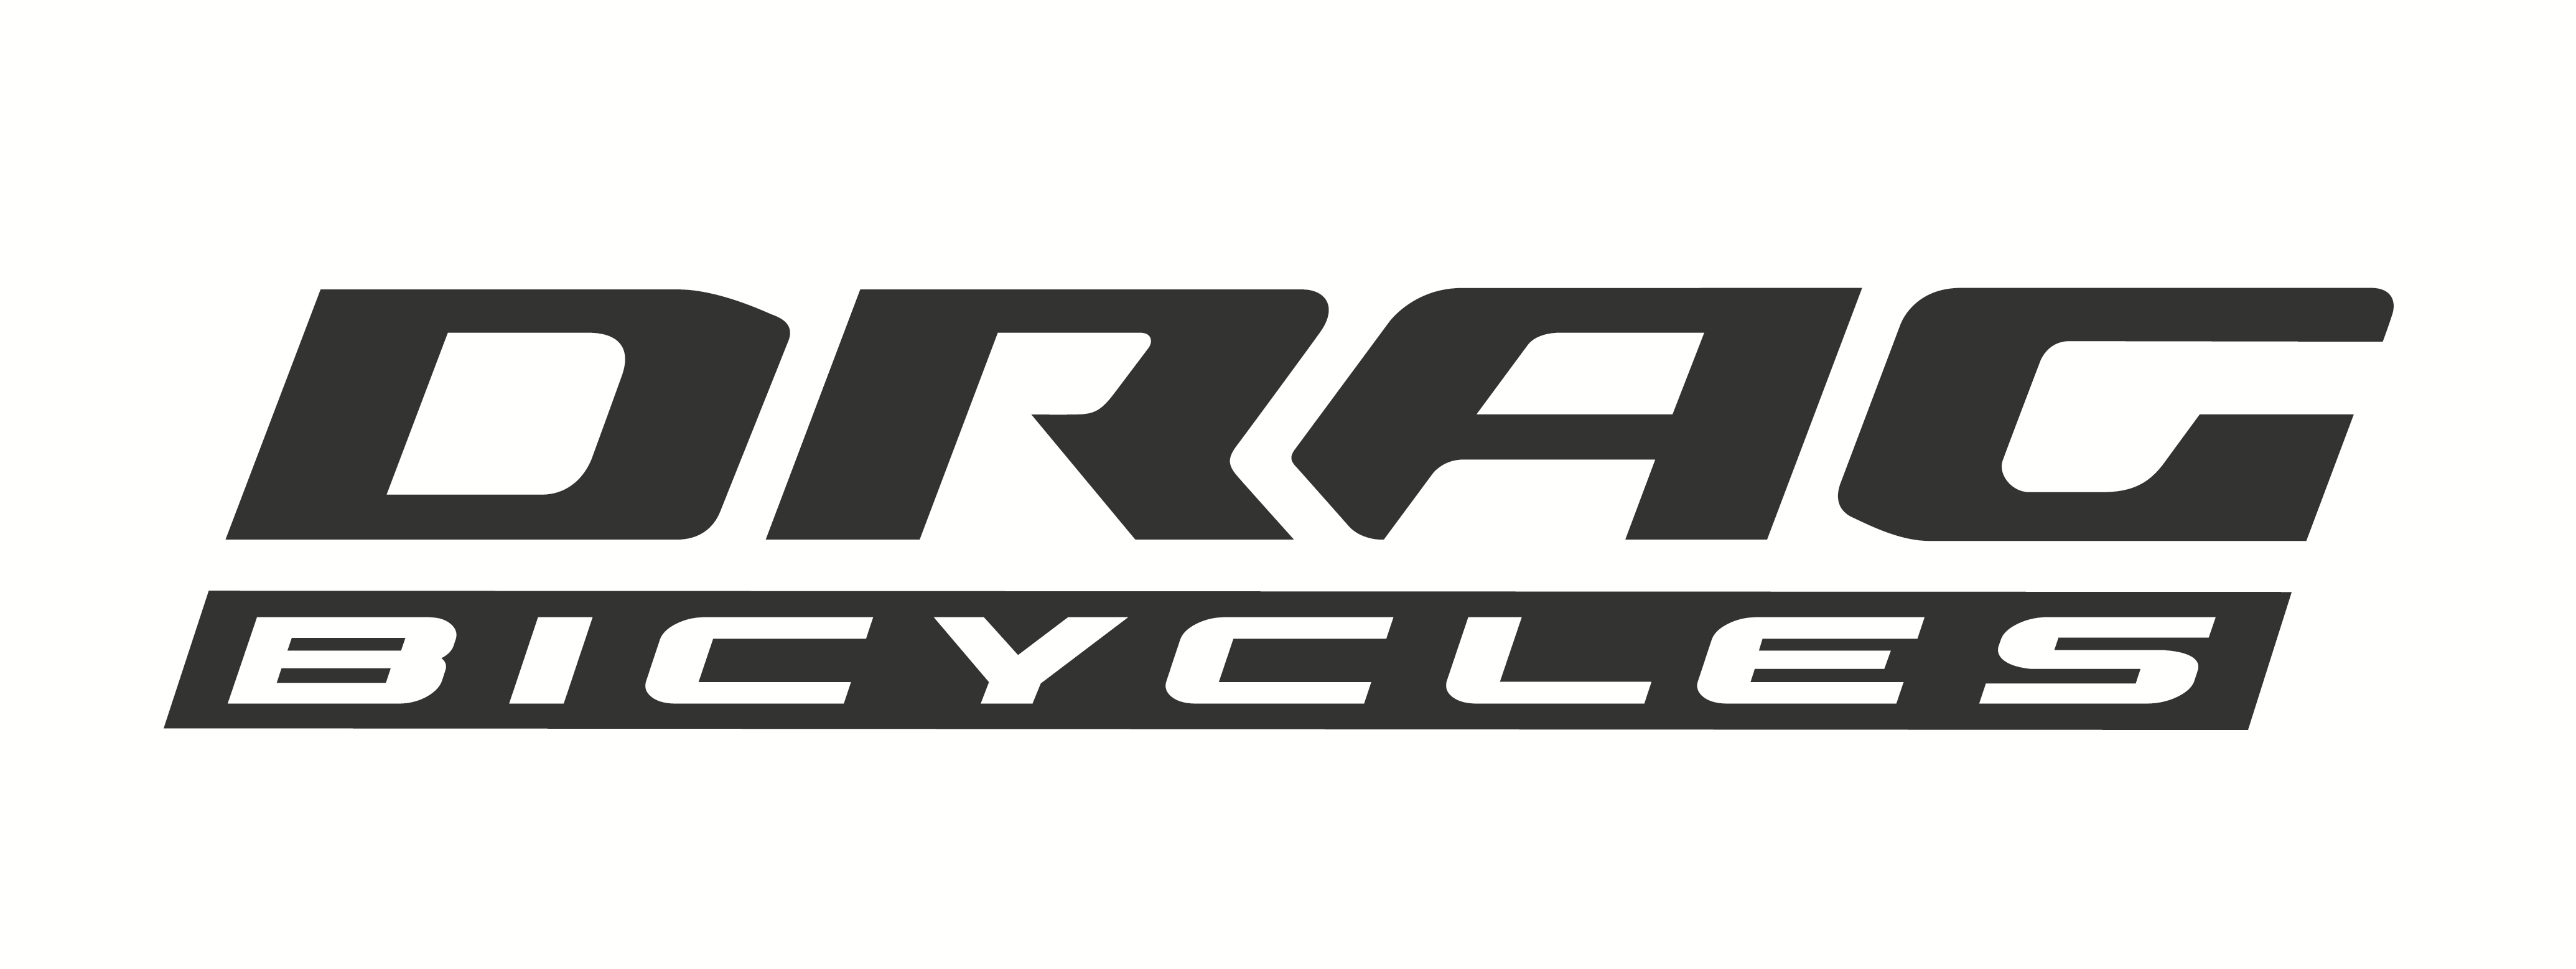 Sleek Bicycle Logo - DRAG OMEGA PRO 2017 CARBON